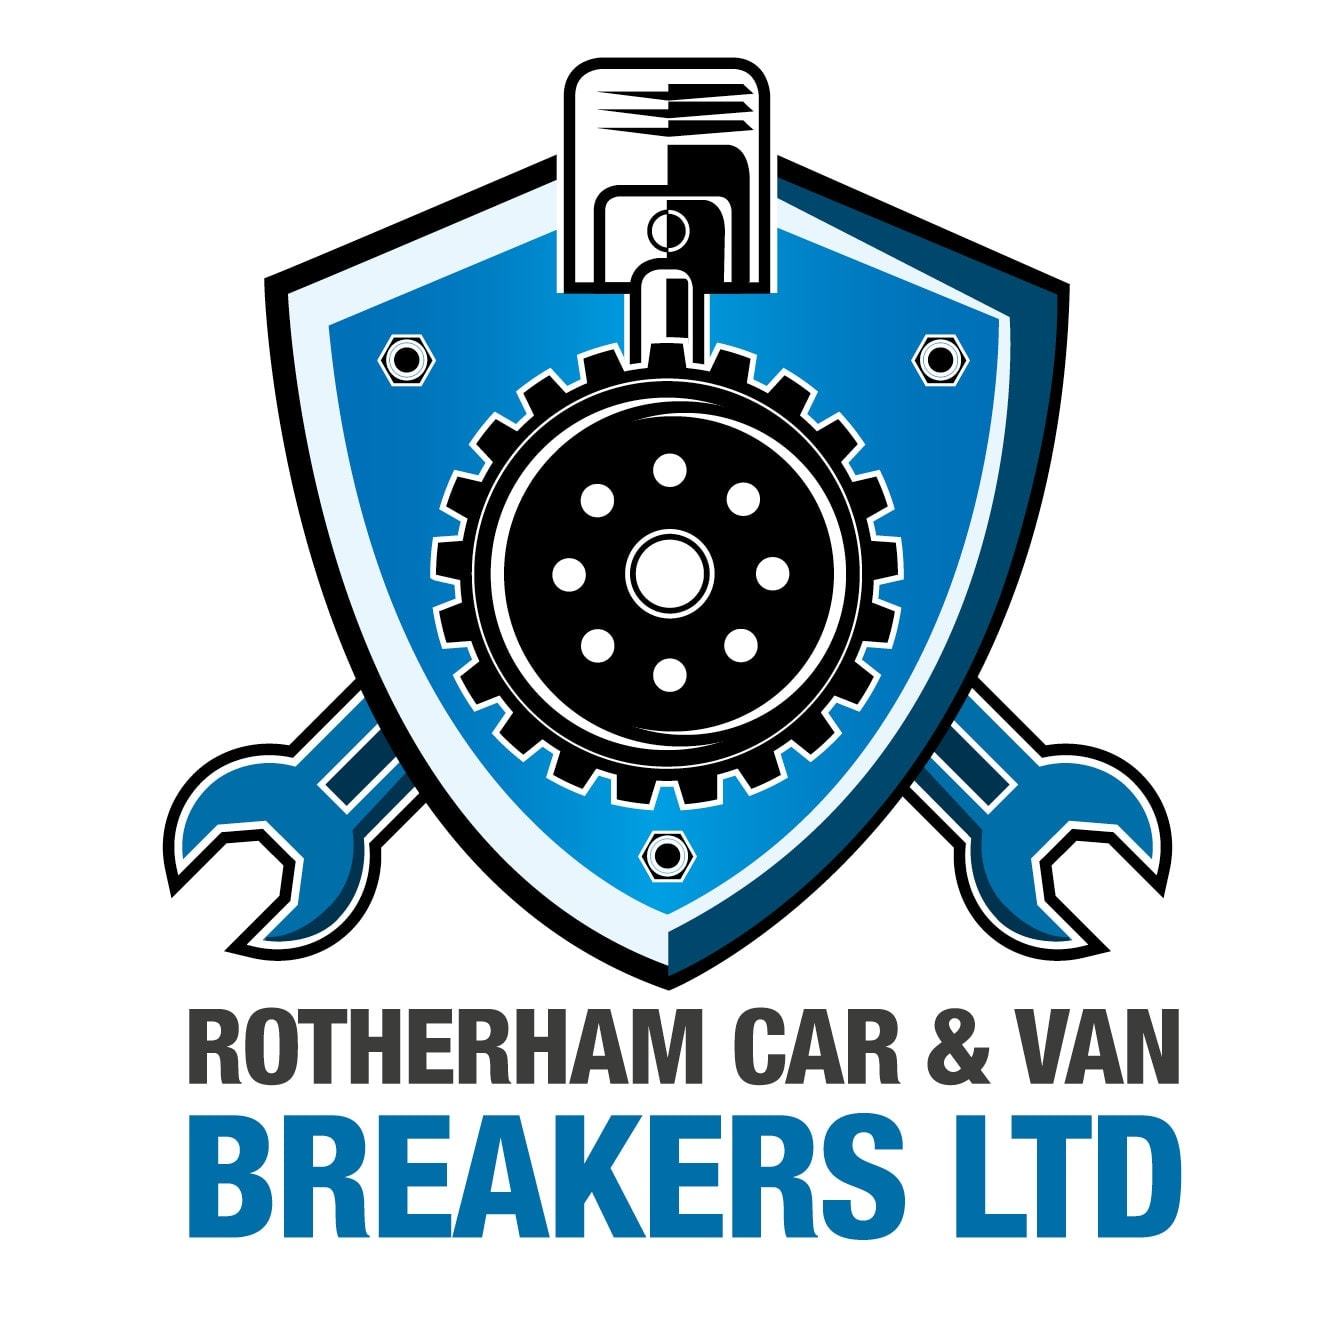 LOGO Rotheram Car & Van Breakers Ltd Rotherham 01709 529922